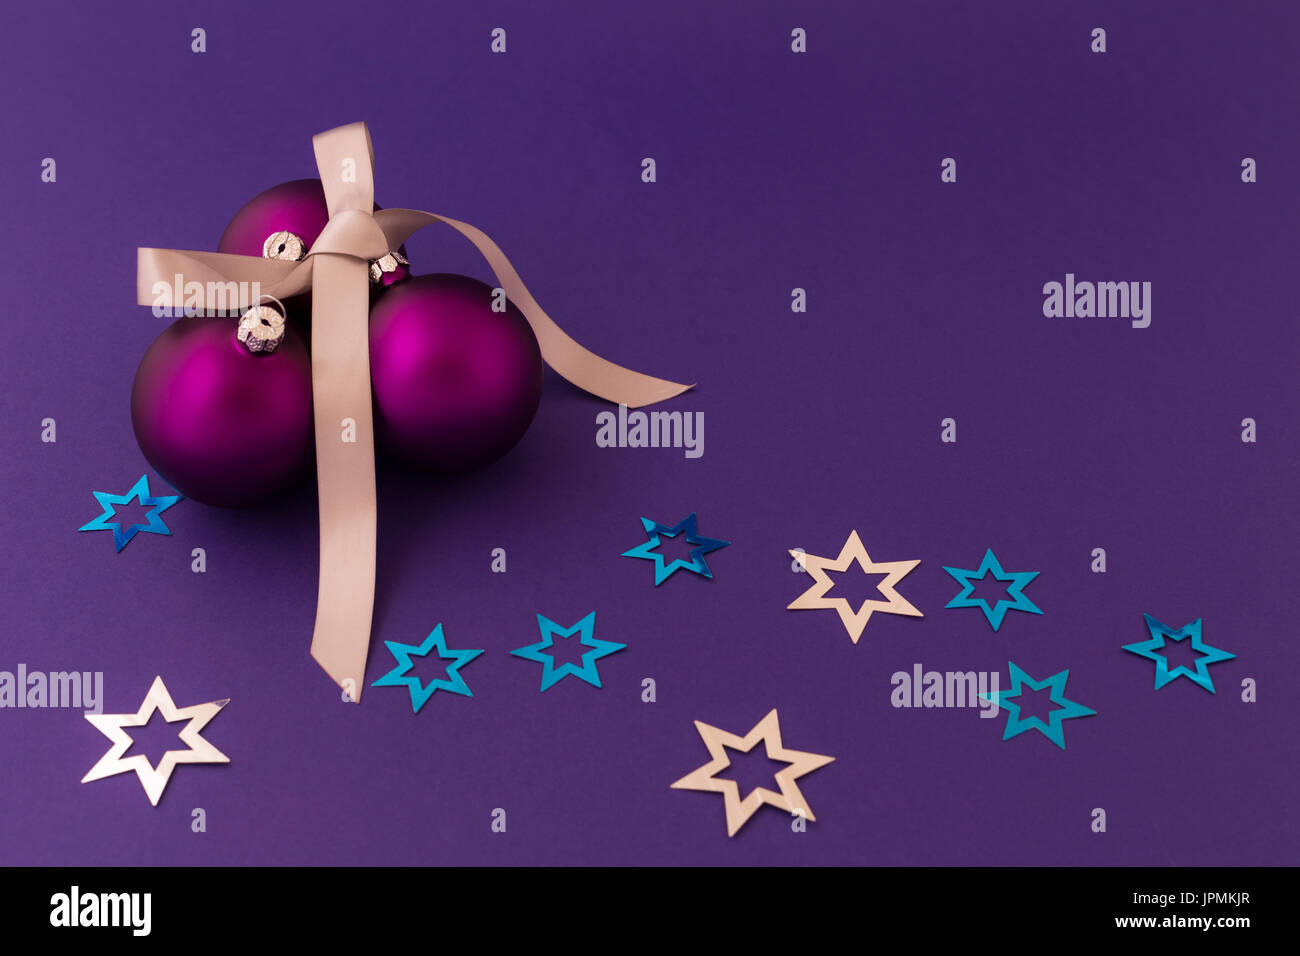 Schöne lila Weihnachtskugeln mit satin-Effekt, graue Geschenkband und metallische silberne und blaue Sterne auf lila Hintergrund. Stockfoto